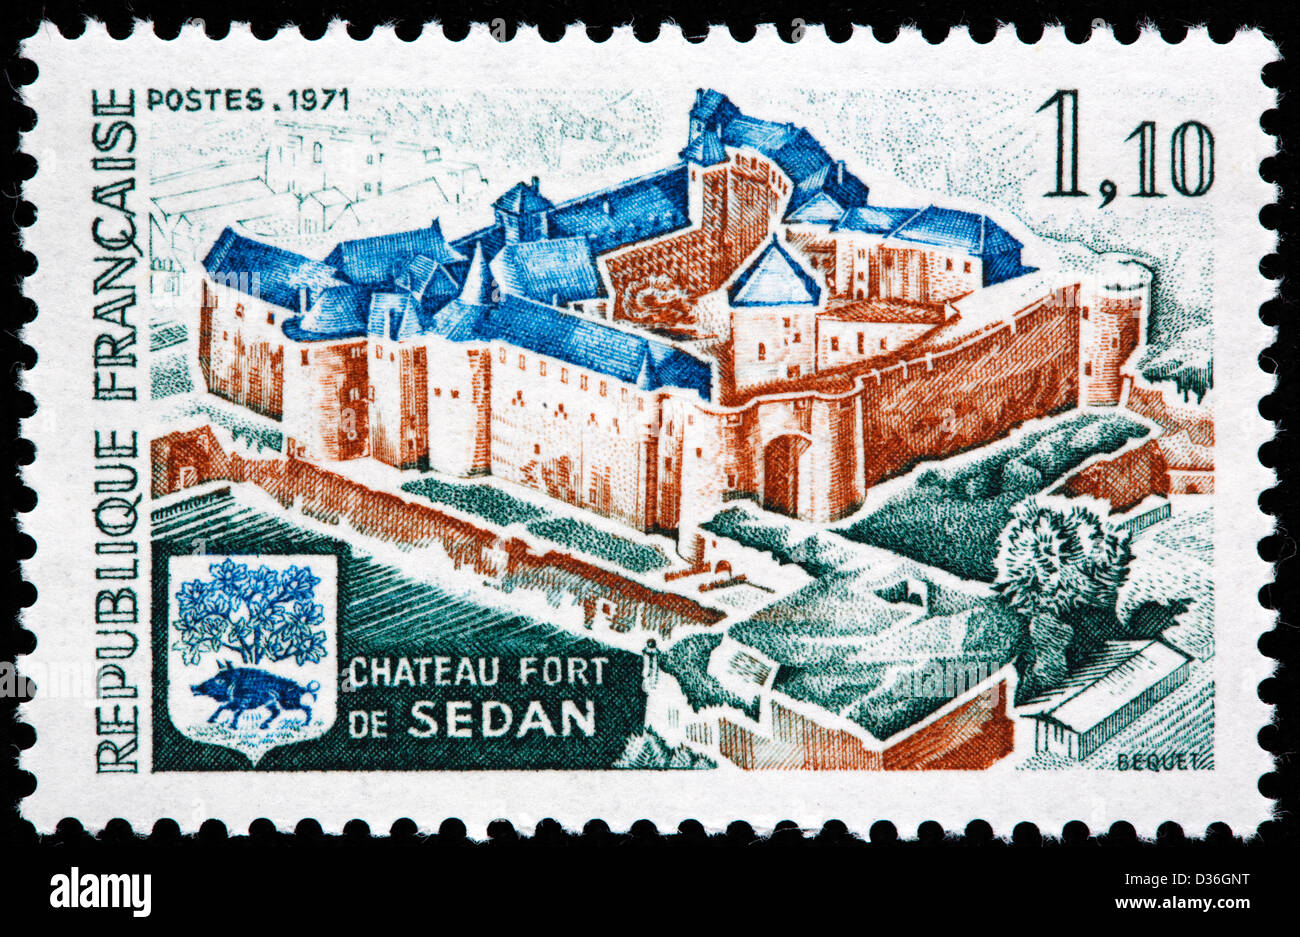 Chateau y Fort de sedán, sello, Francia, 1971 Foto de stock